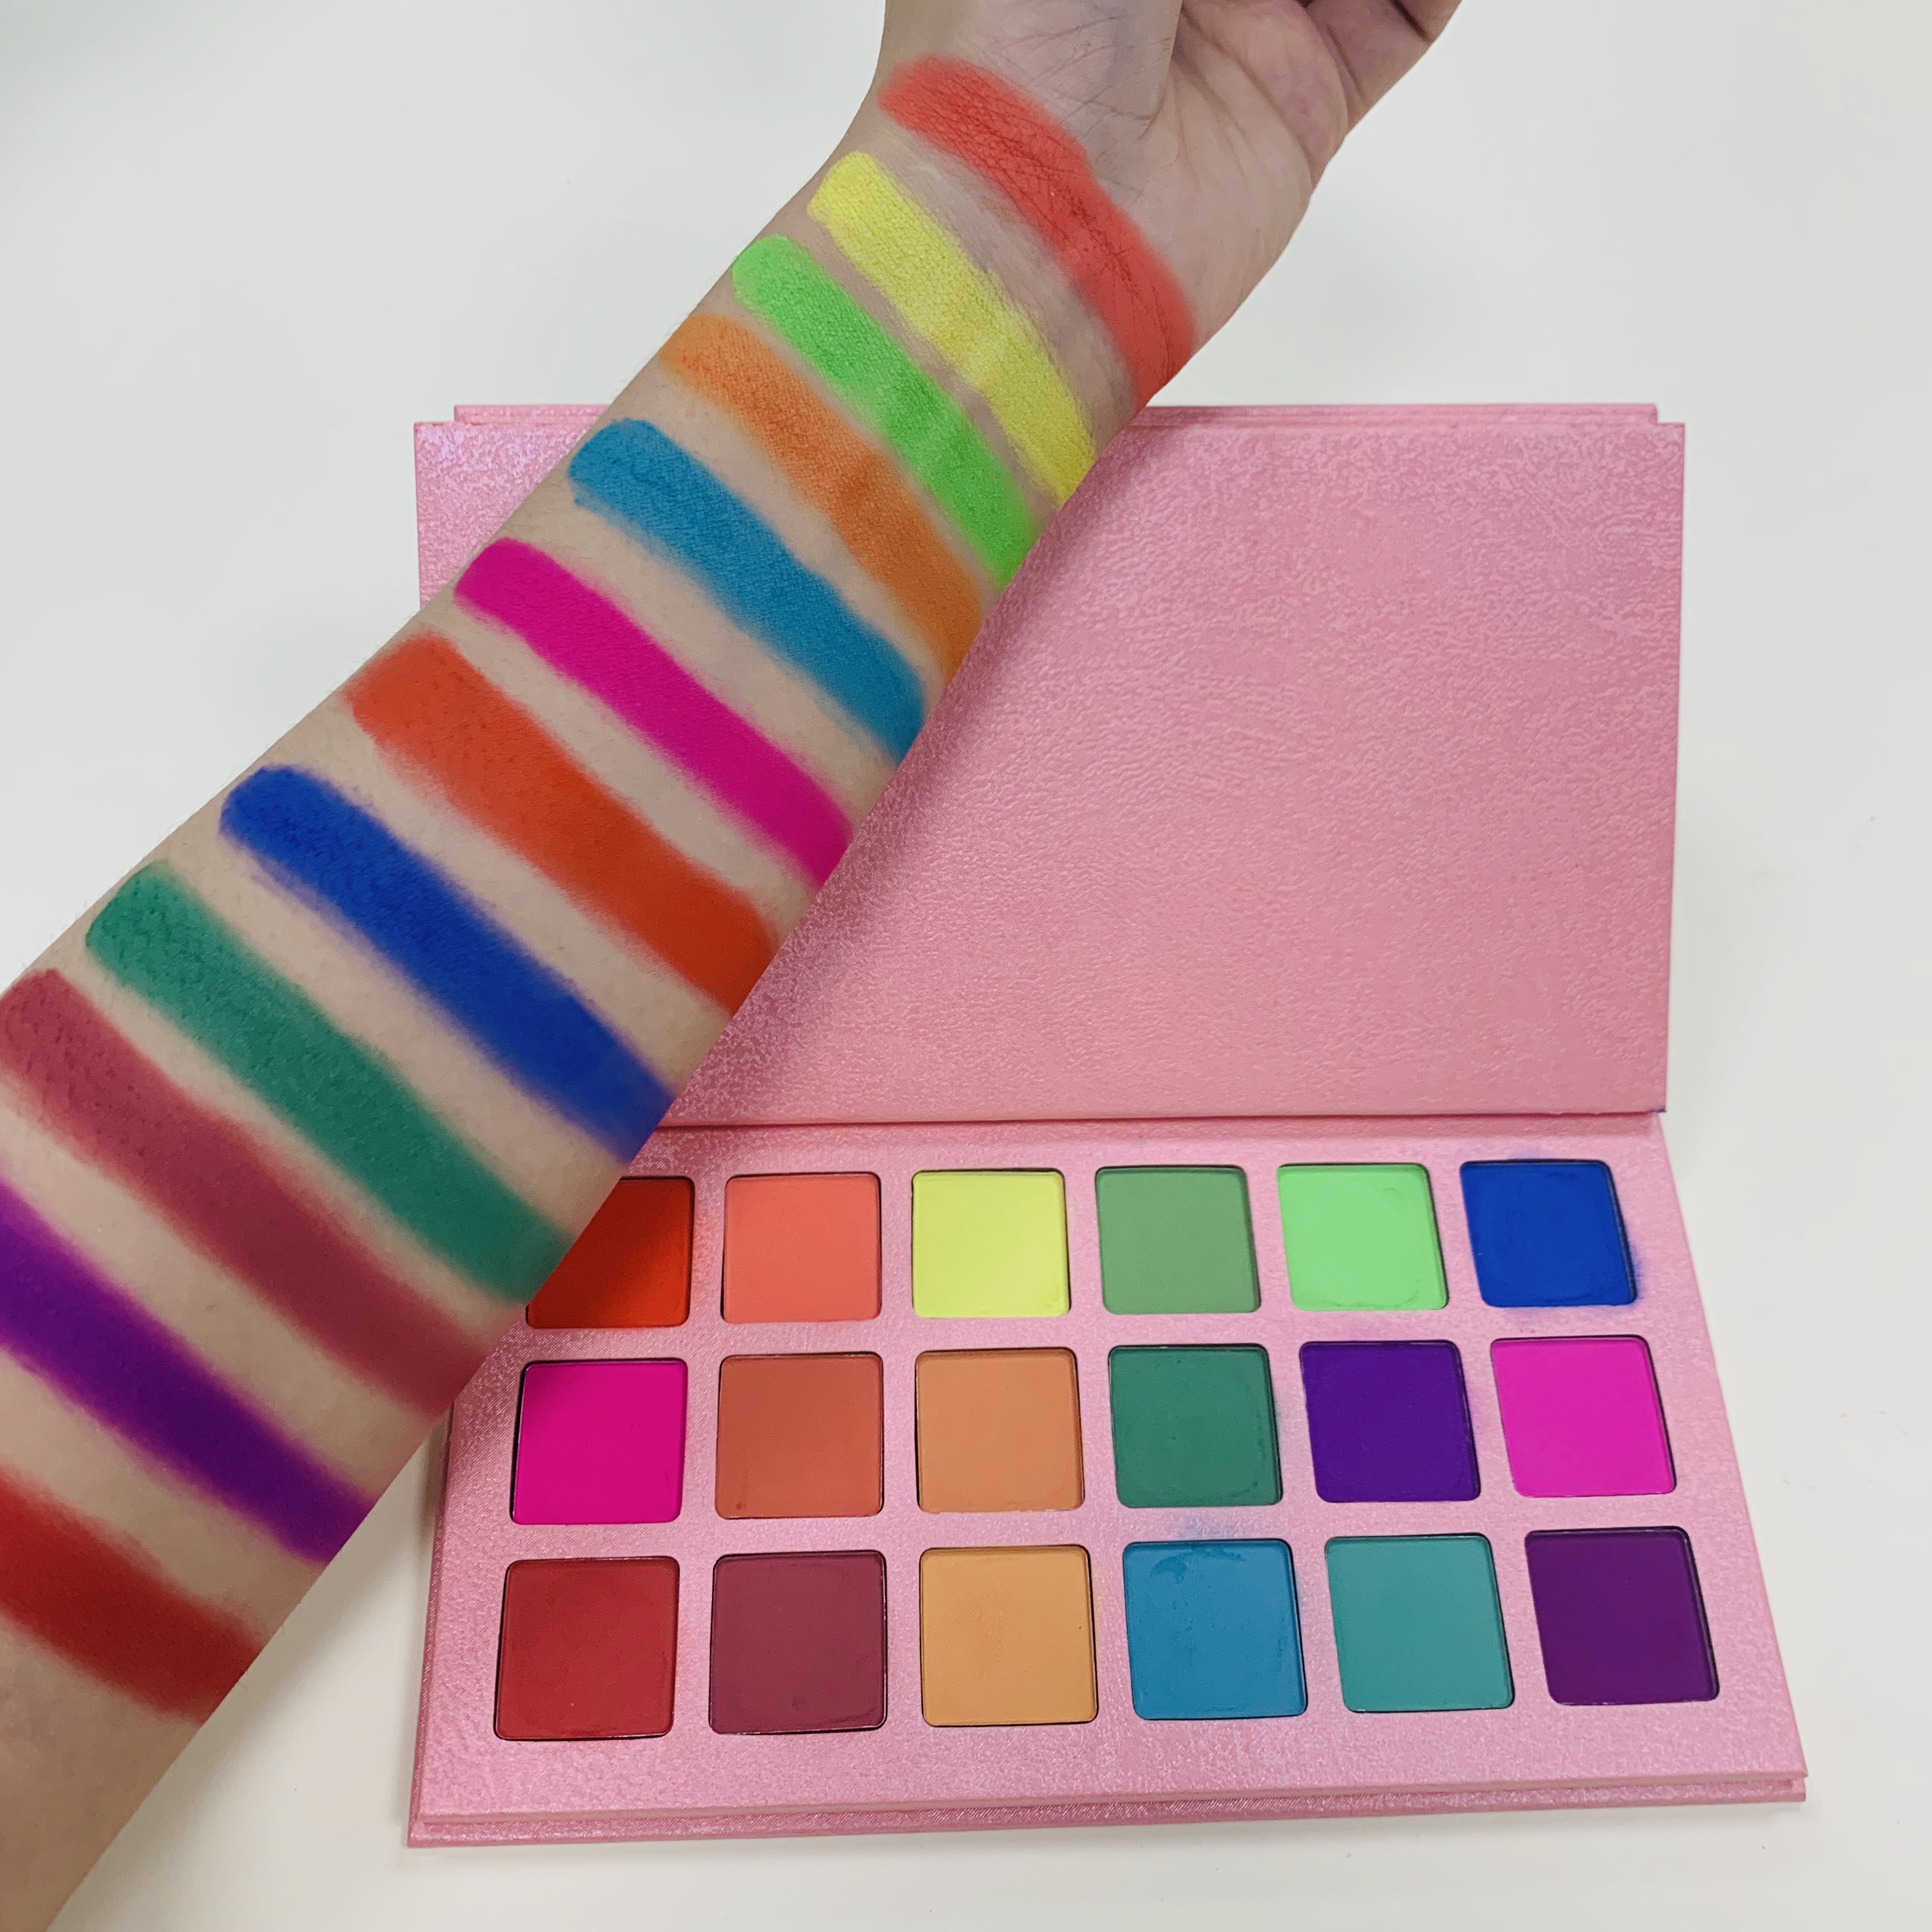 Özel etiket kozmetik pembe palet şeker 18 renk neon pigment göz farı hiçbir logo ışıltılı göz farı paleti